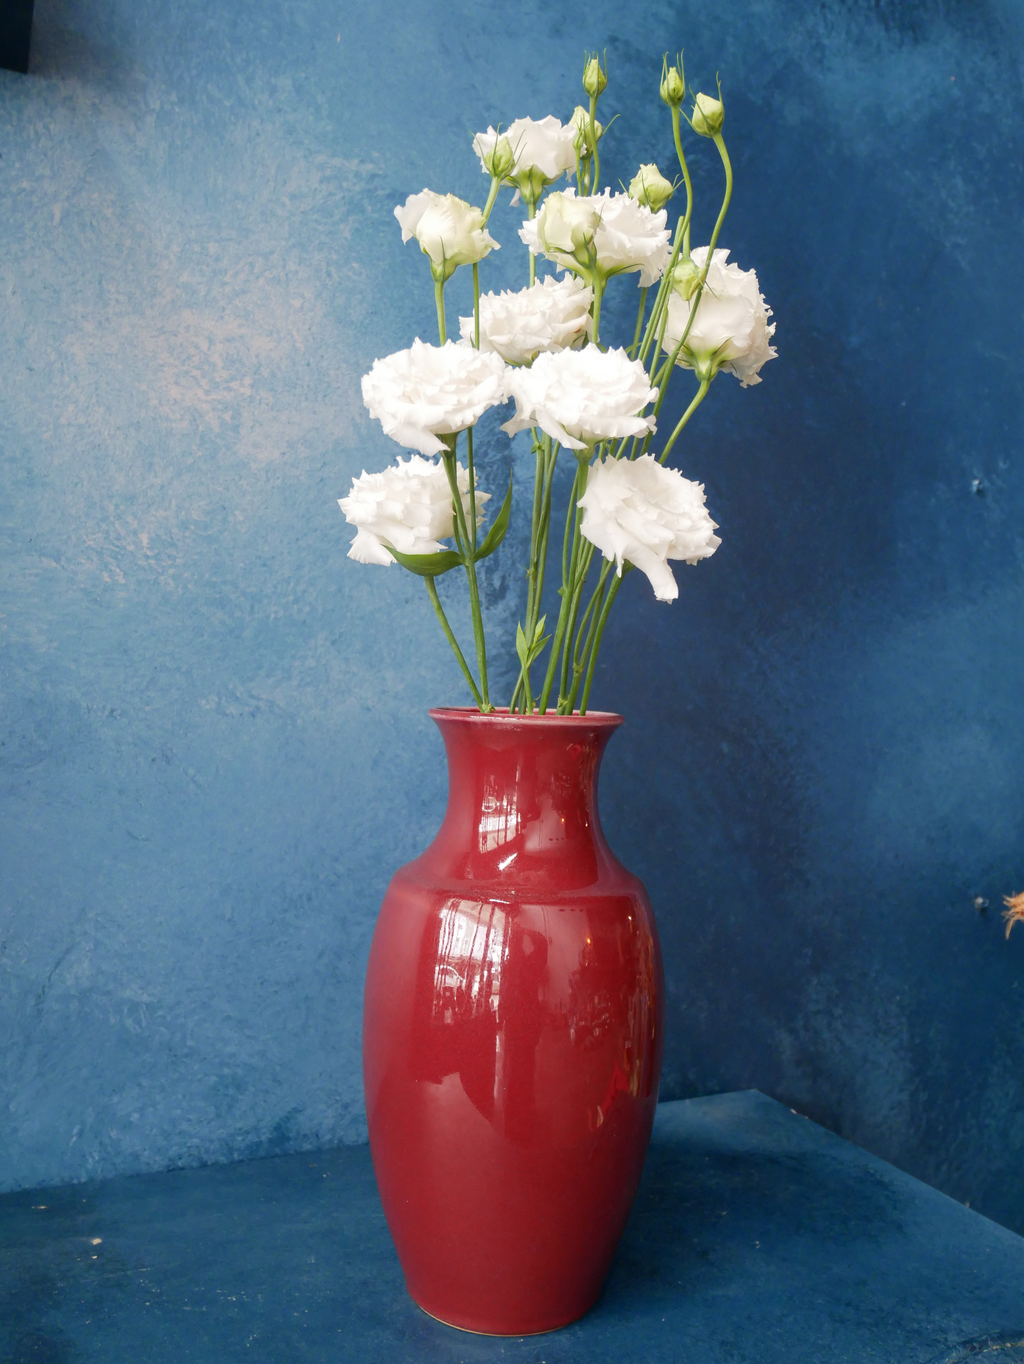 Copper Red Vase - IV